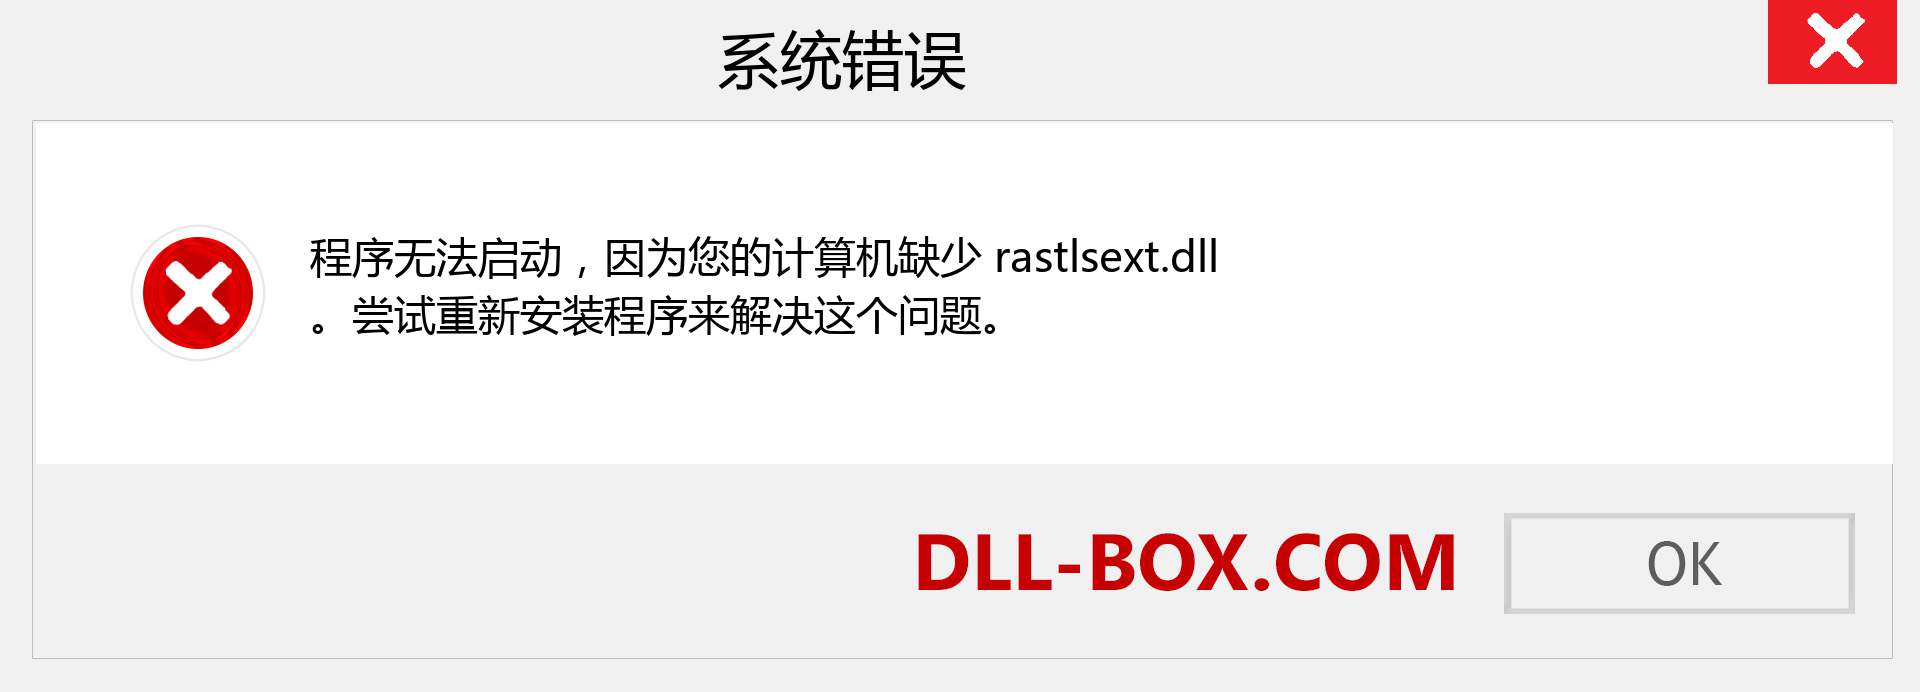 rastlsext.dll 文件丢失？。 适用于 Windows 7、8、10 的下载 - 修复 Windows、照片、图像上的 rastlsext dll 丢失错误